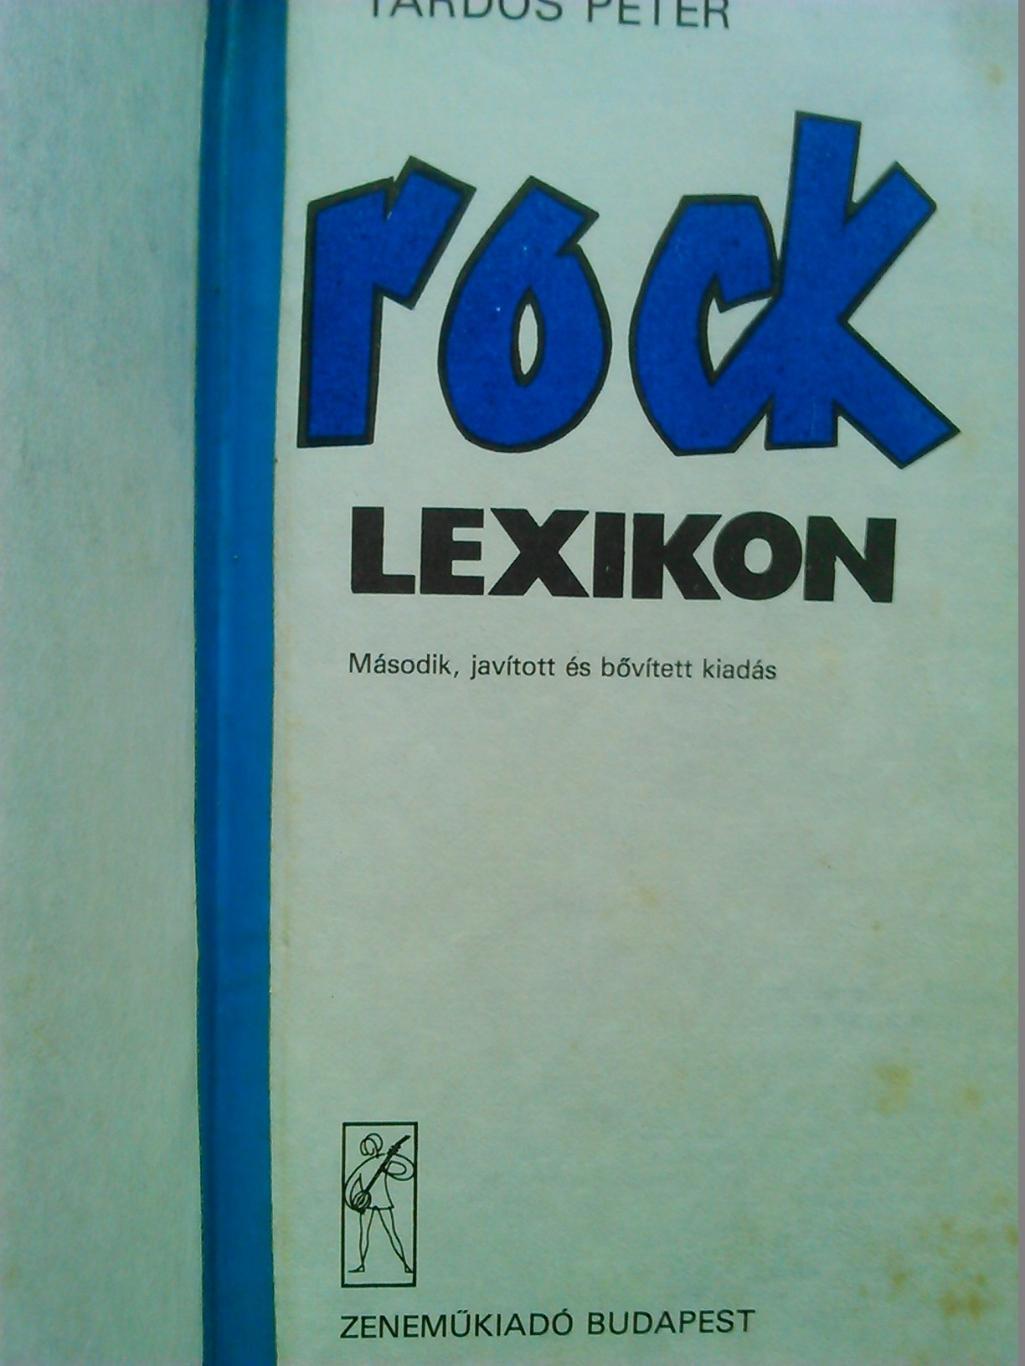 книга ROCK LEXICON (Рок энциклопедия) /Венгрия. 1